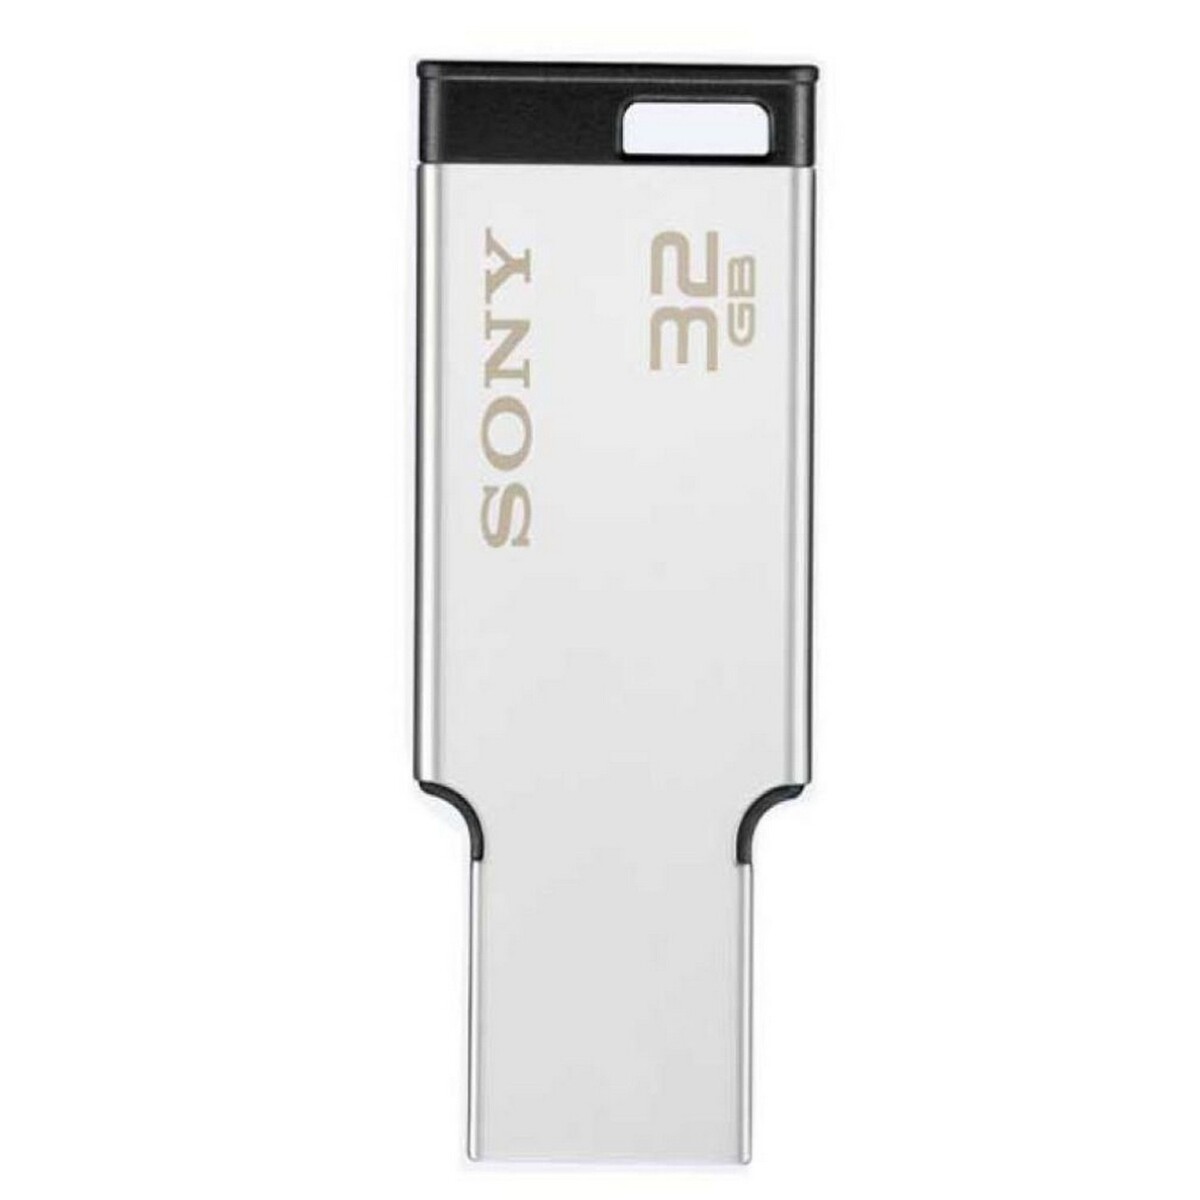 Sony Flash Drive Metal MX 32GB